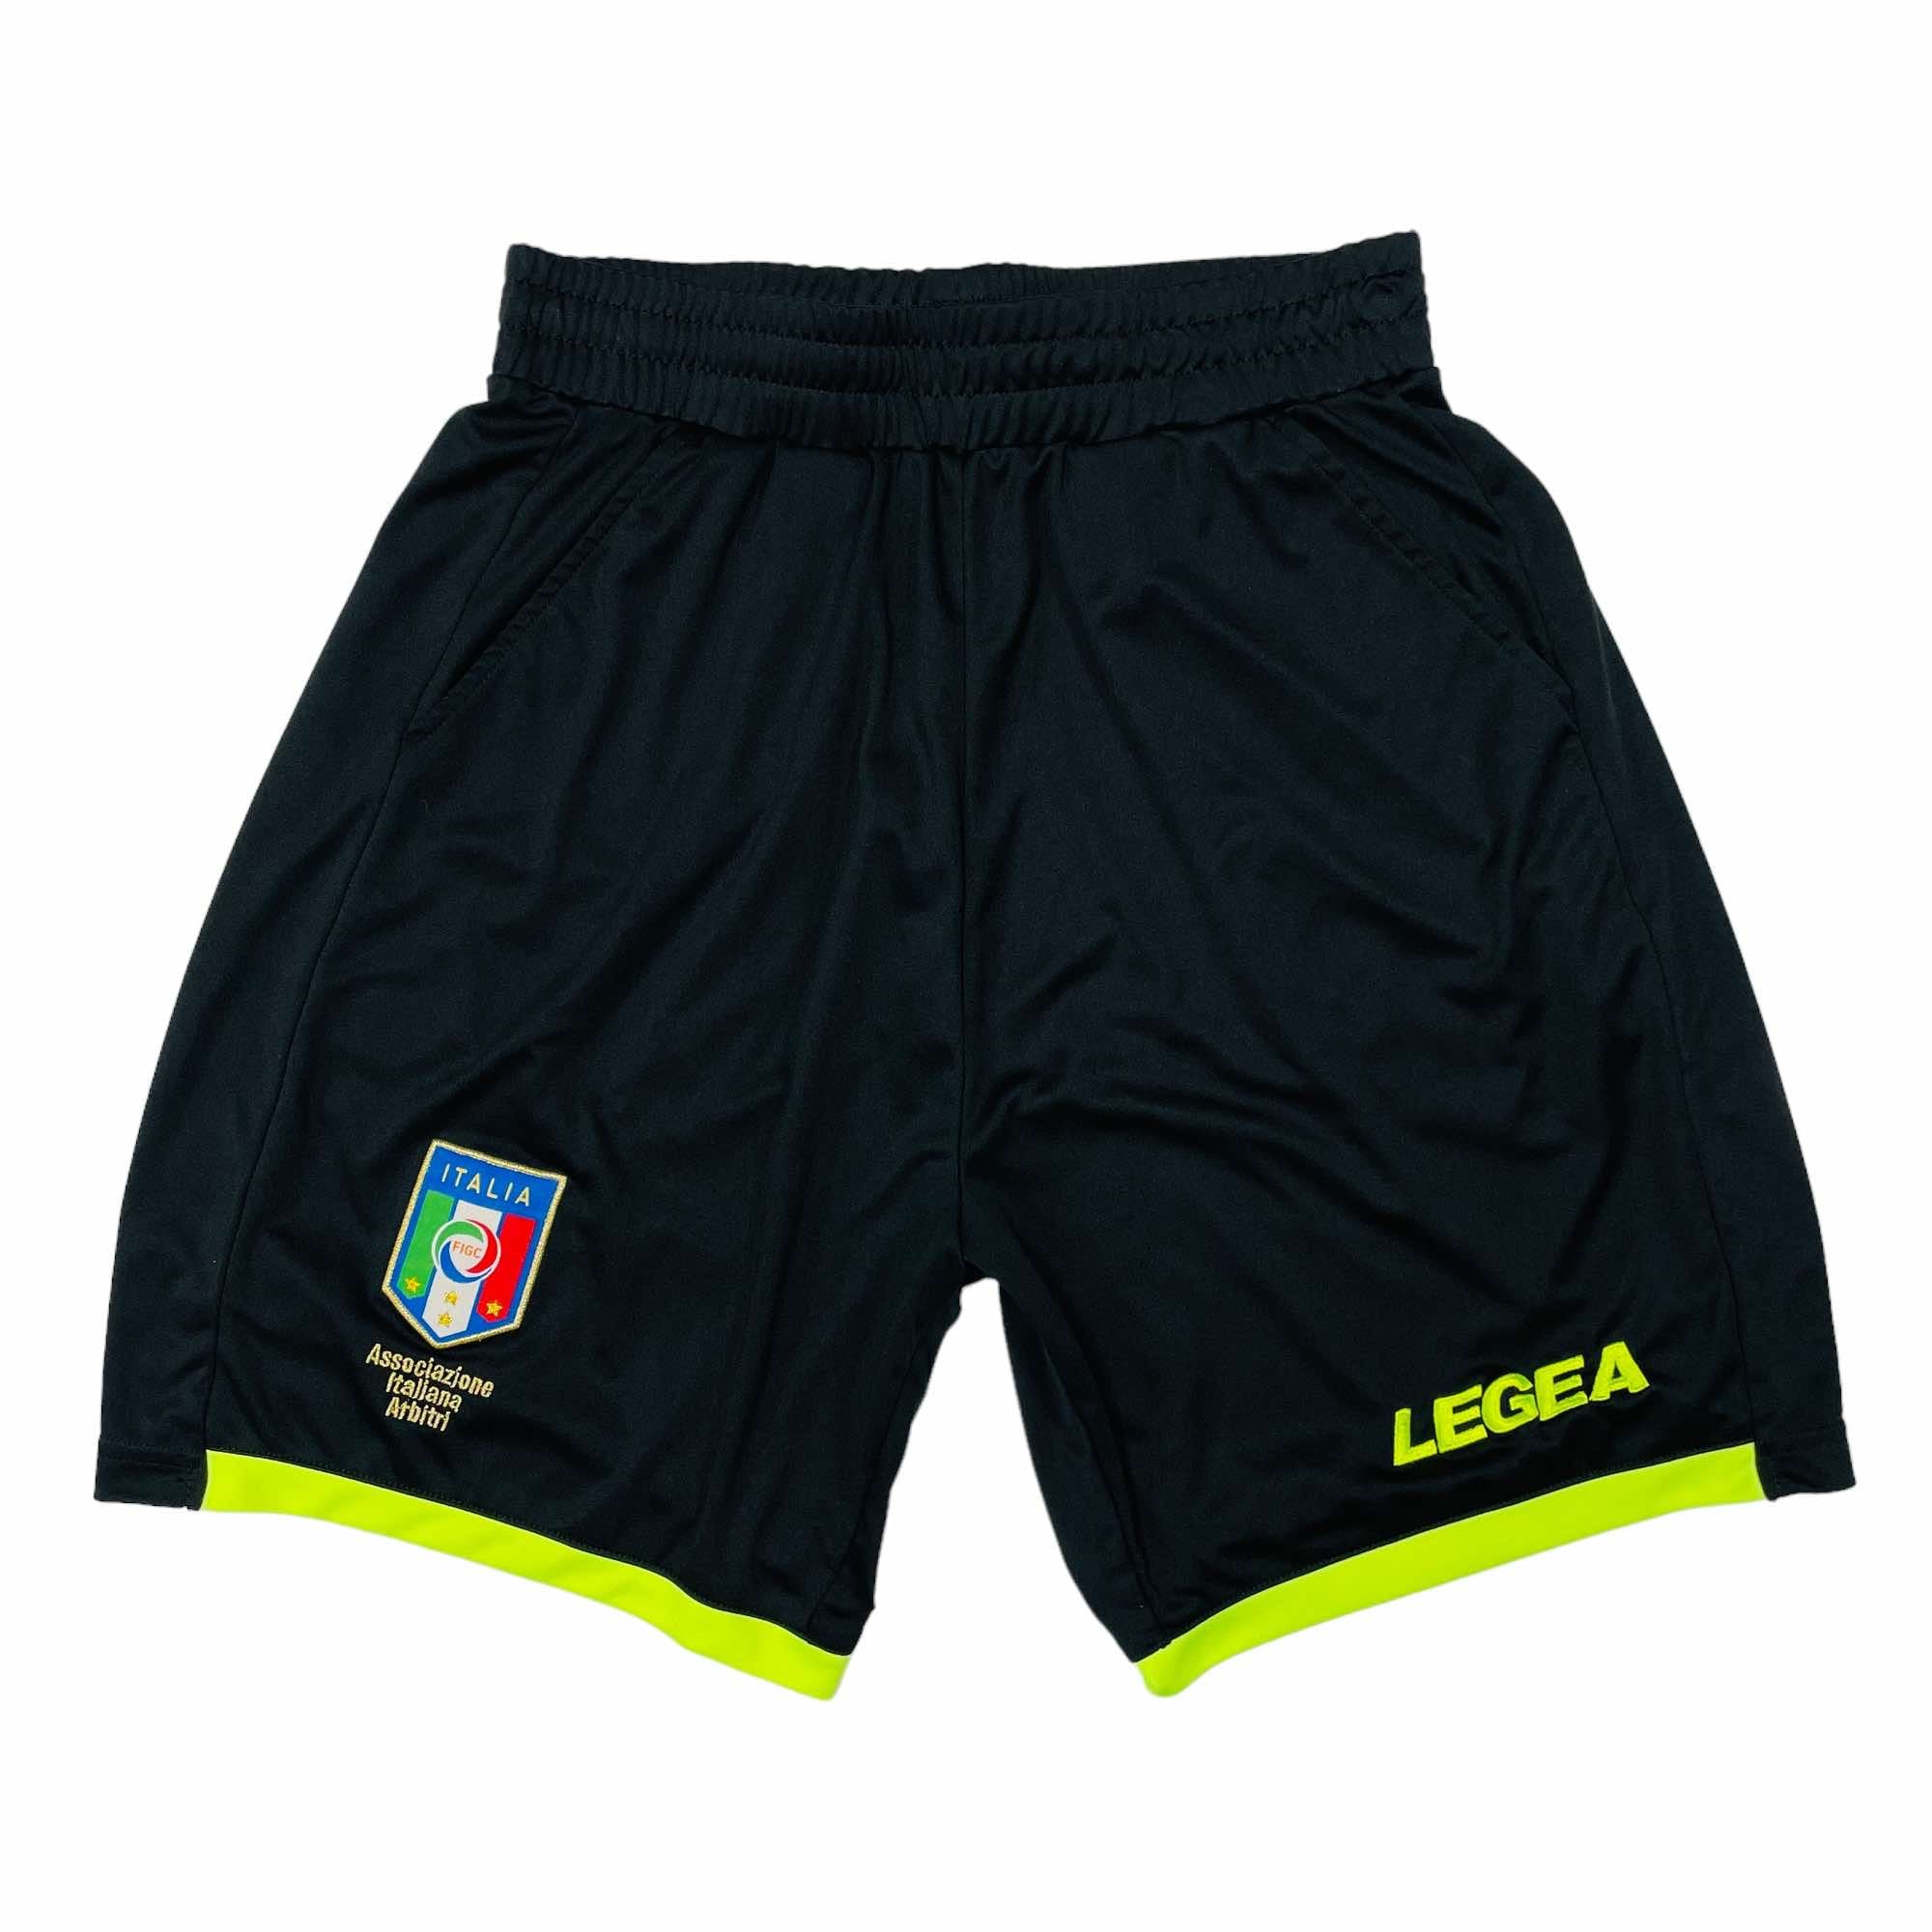 Legea Italy National Team Football Shorts - Small